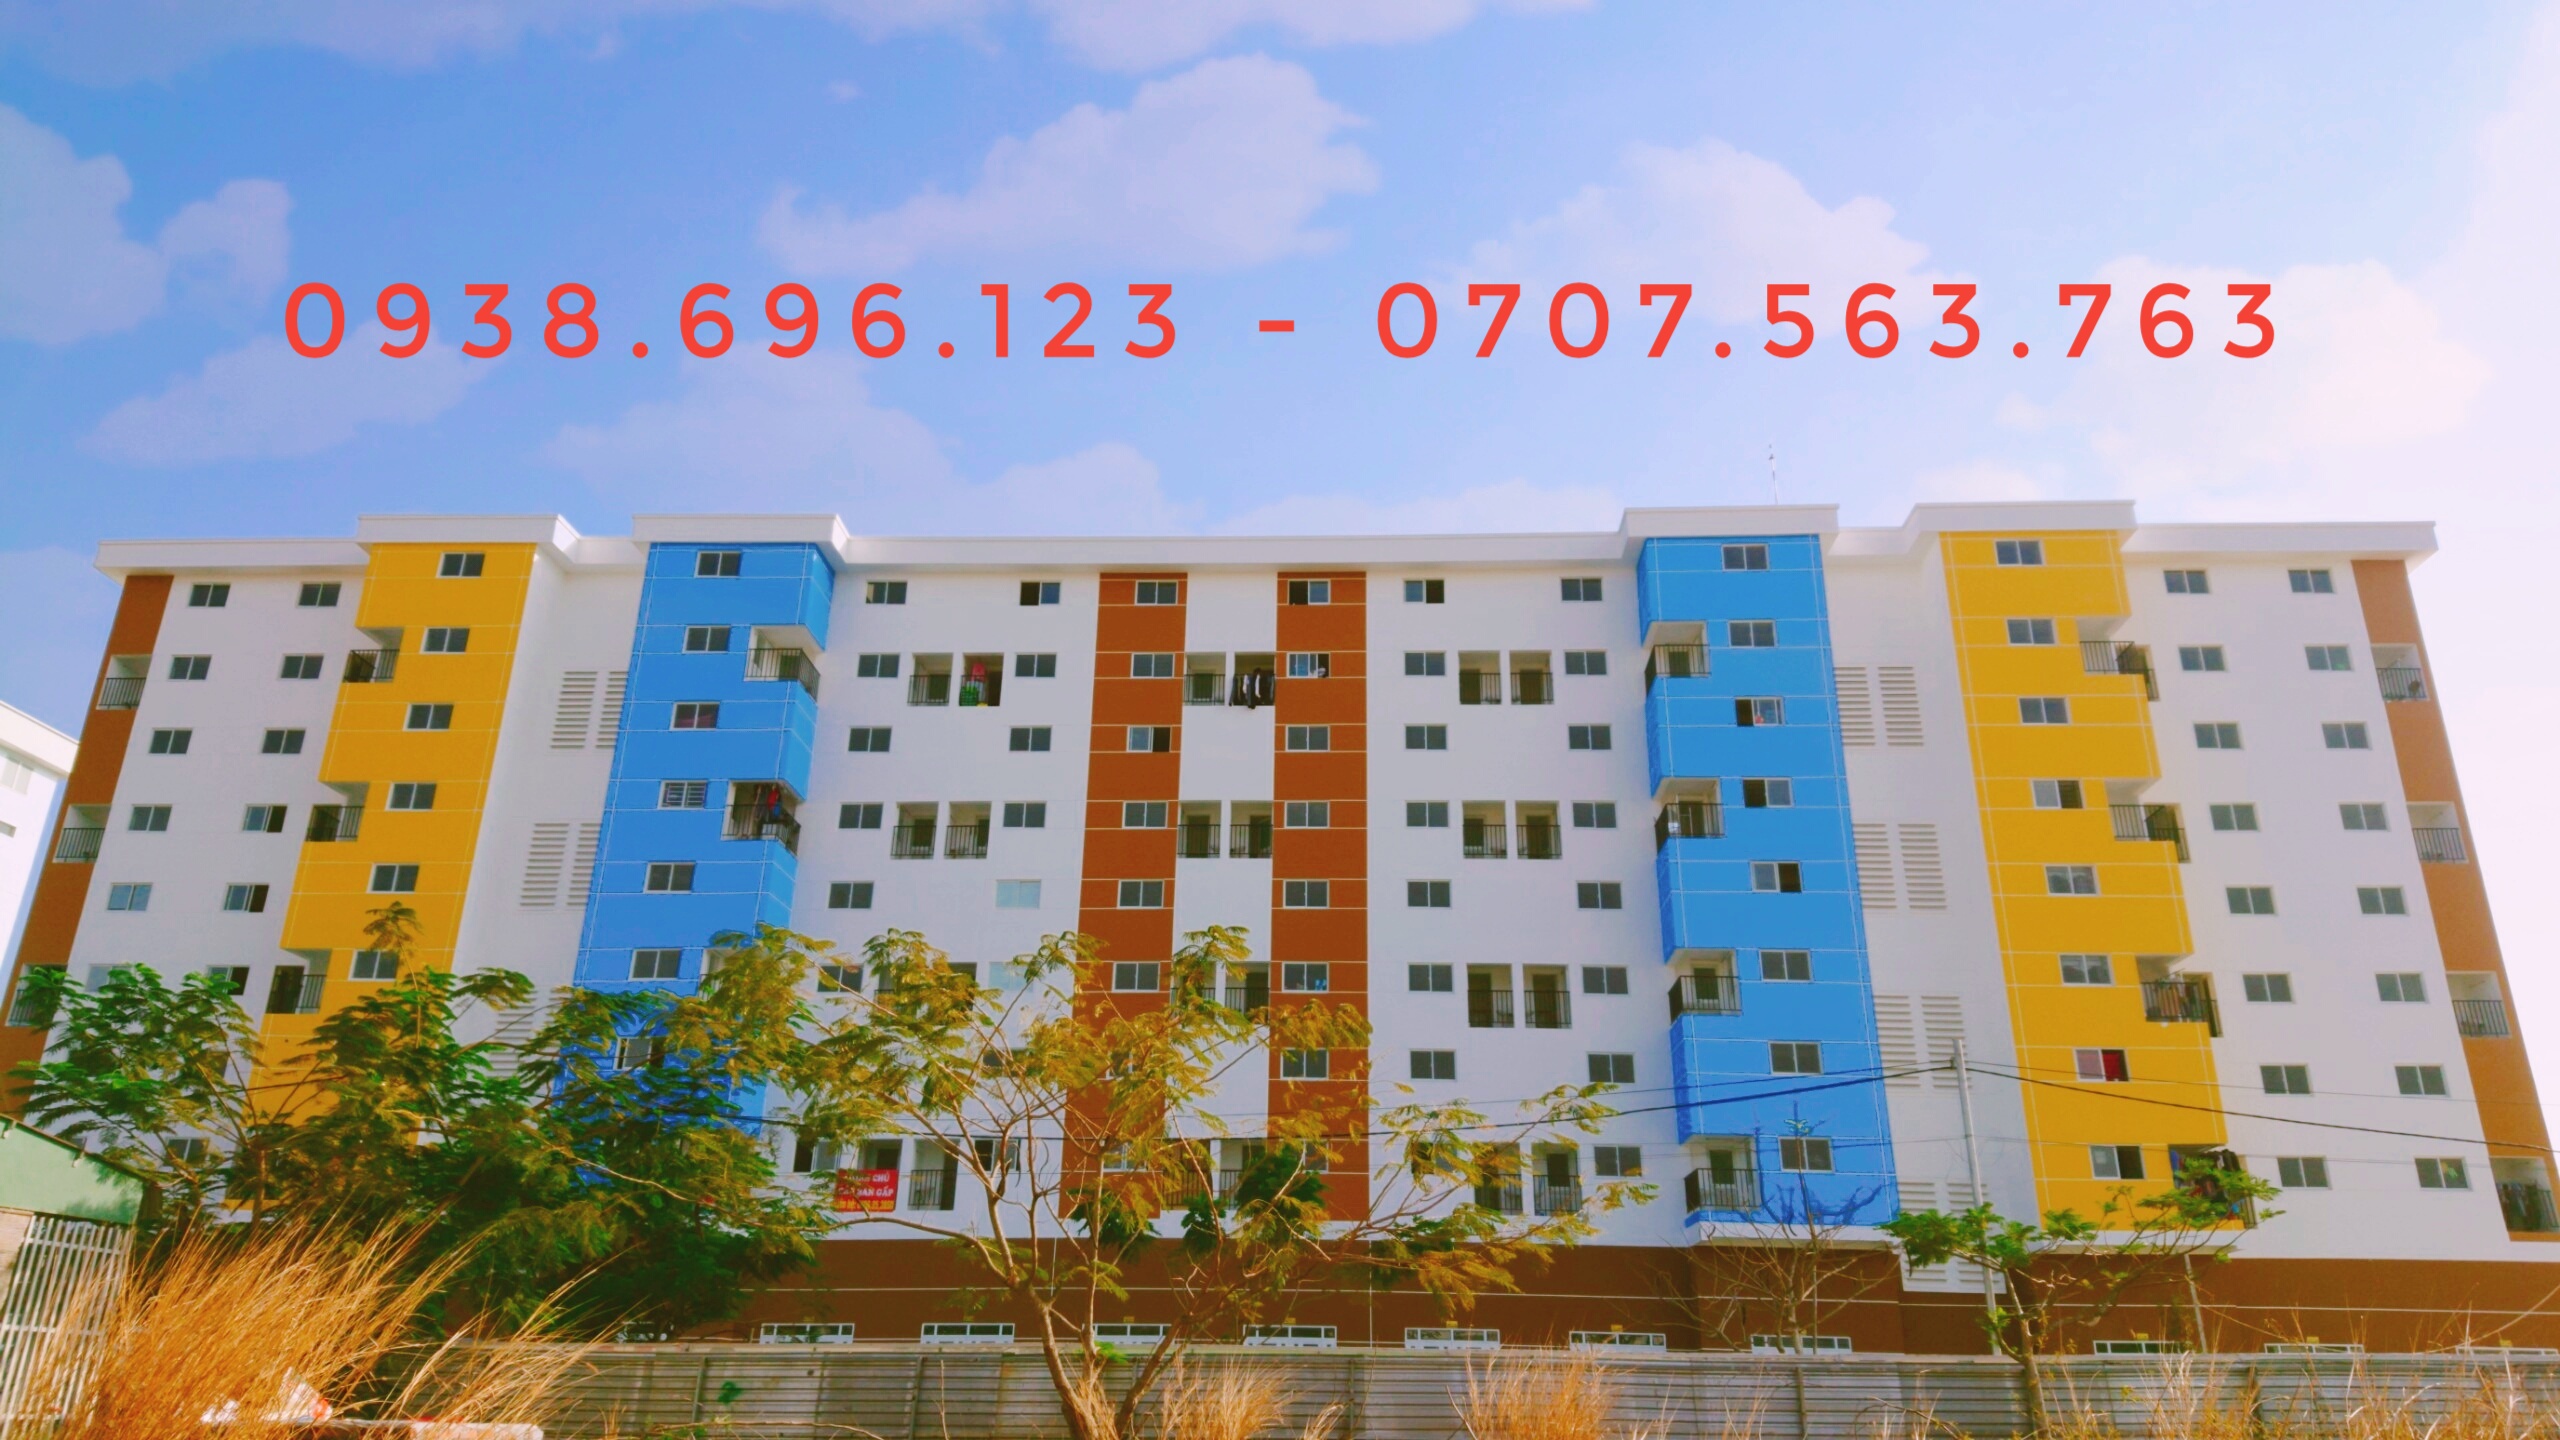 Kinh nghiệm cần biết khi tìm mua căn hộ chung cư DTA Nhơn Trạch